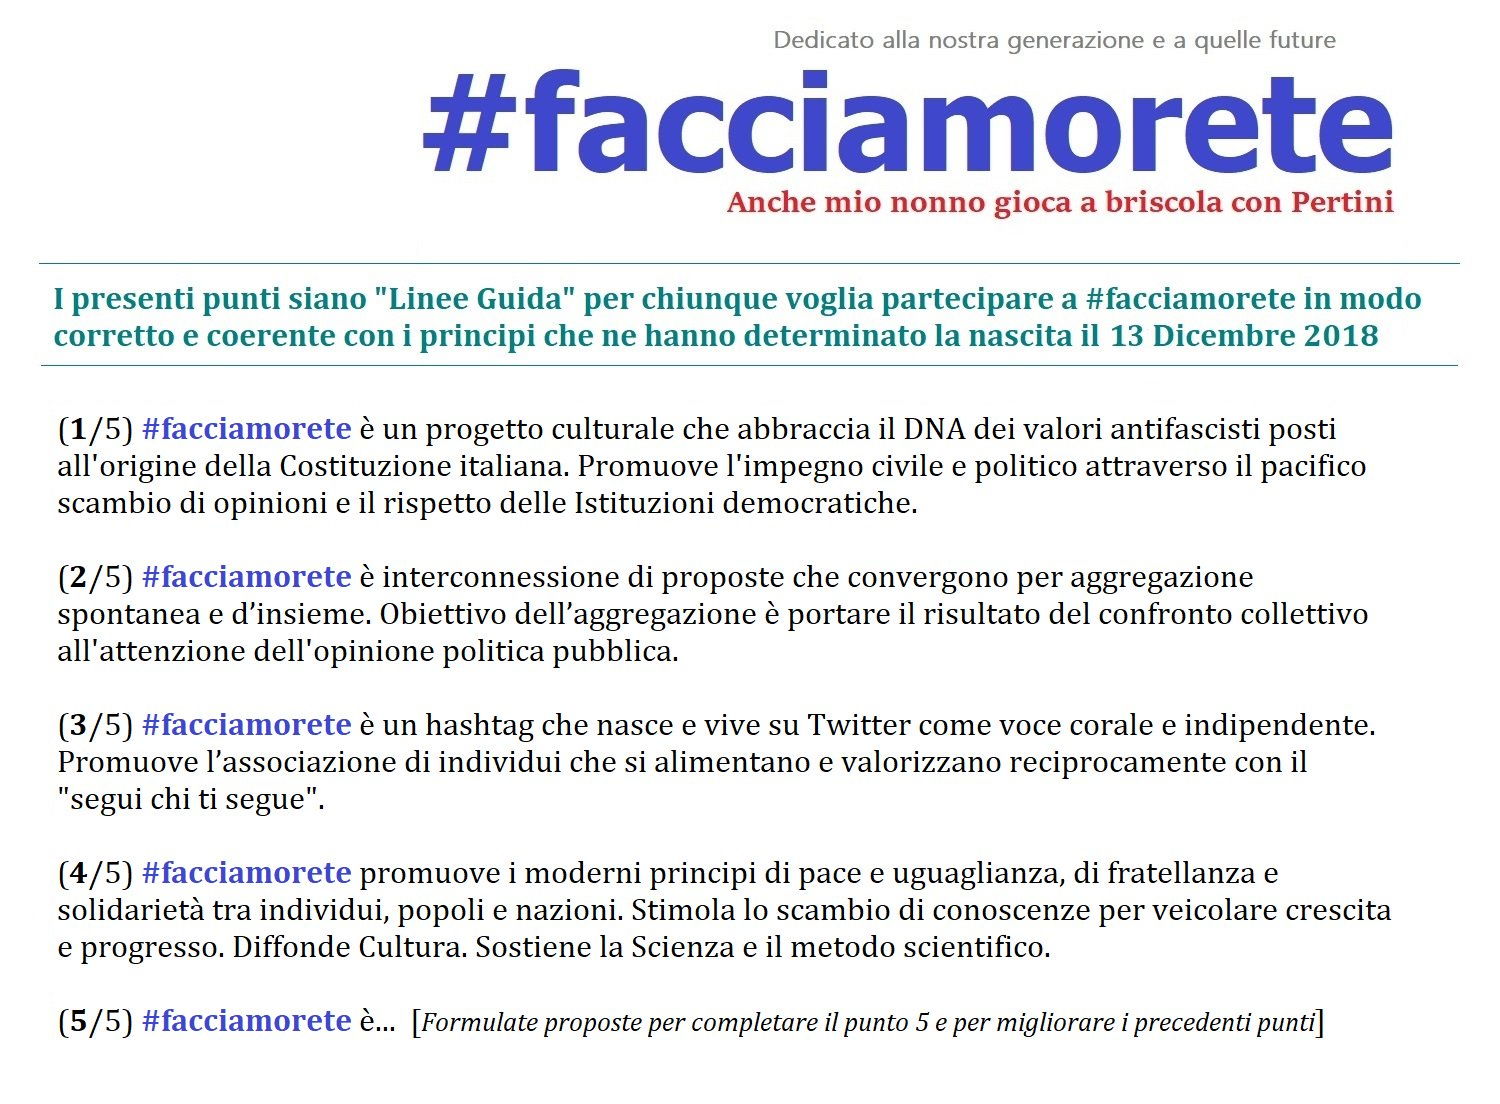 La rete Twitter più grande d'Italia: i dati dell'hashtag #FacciamoRete foto 6